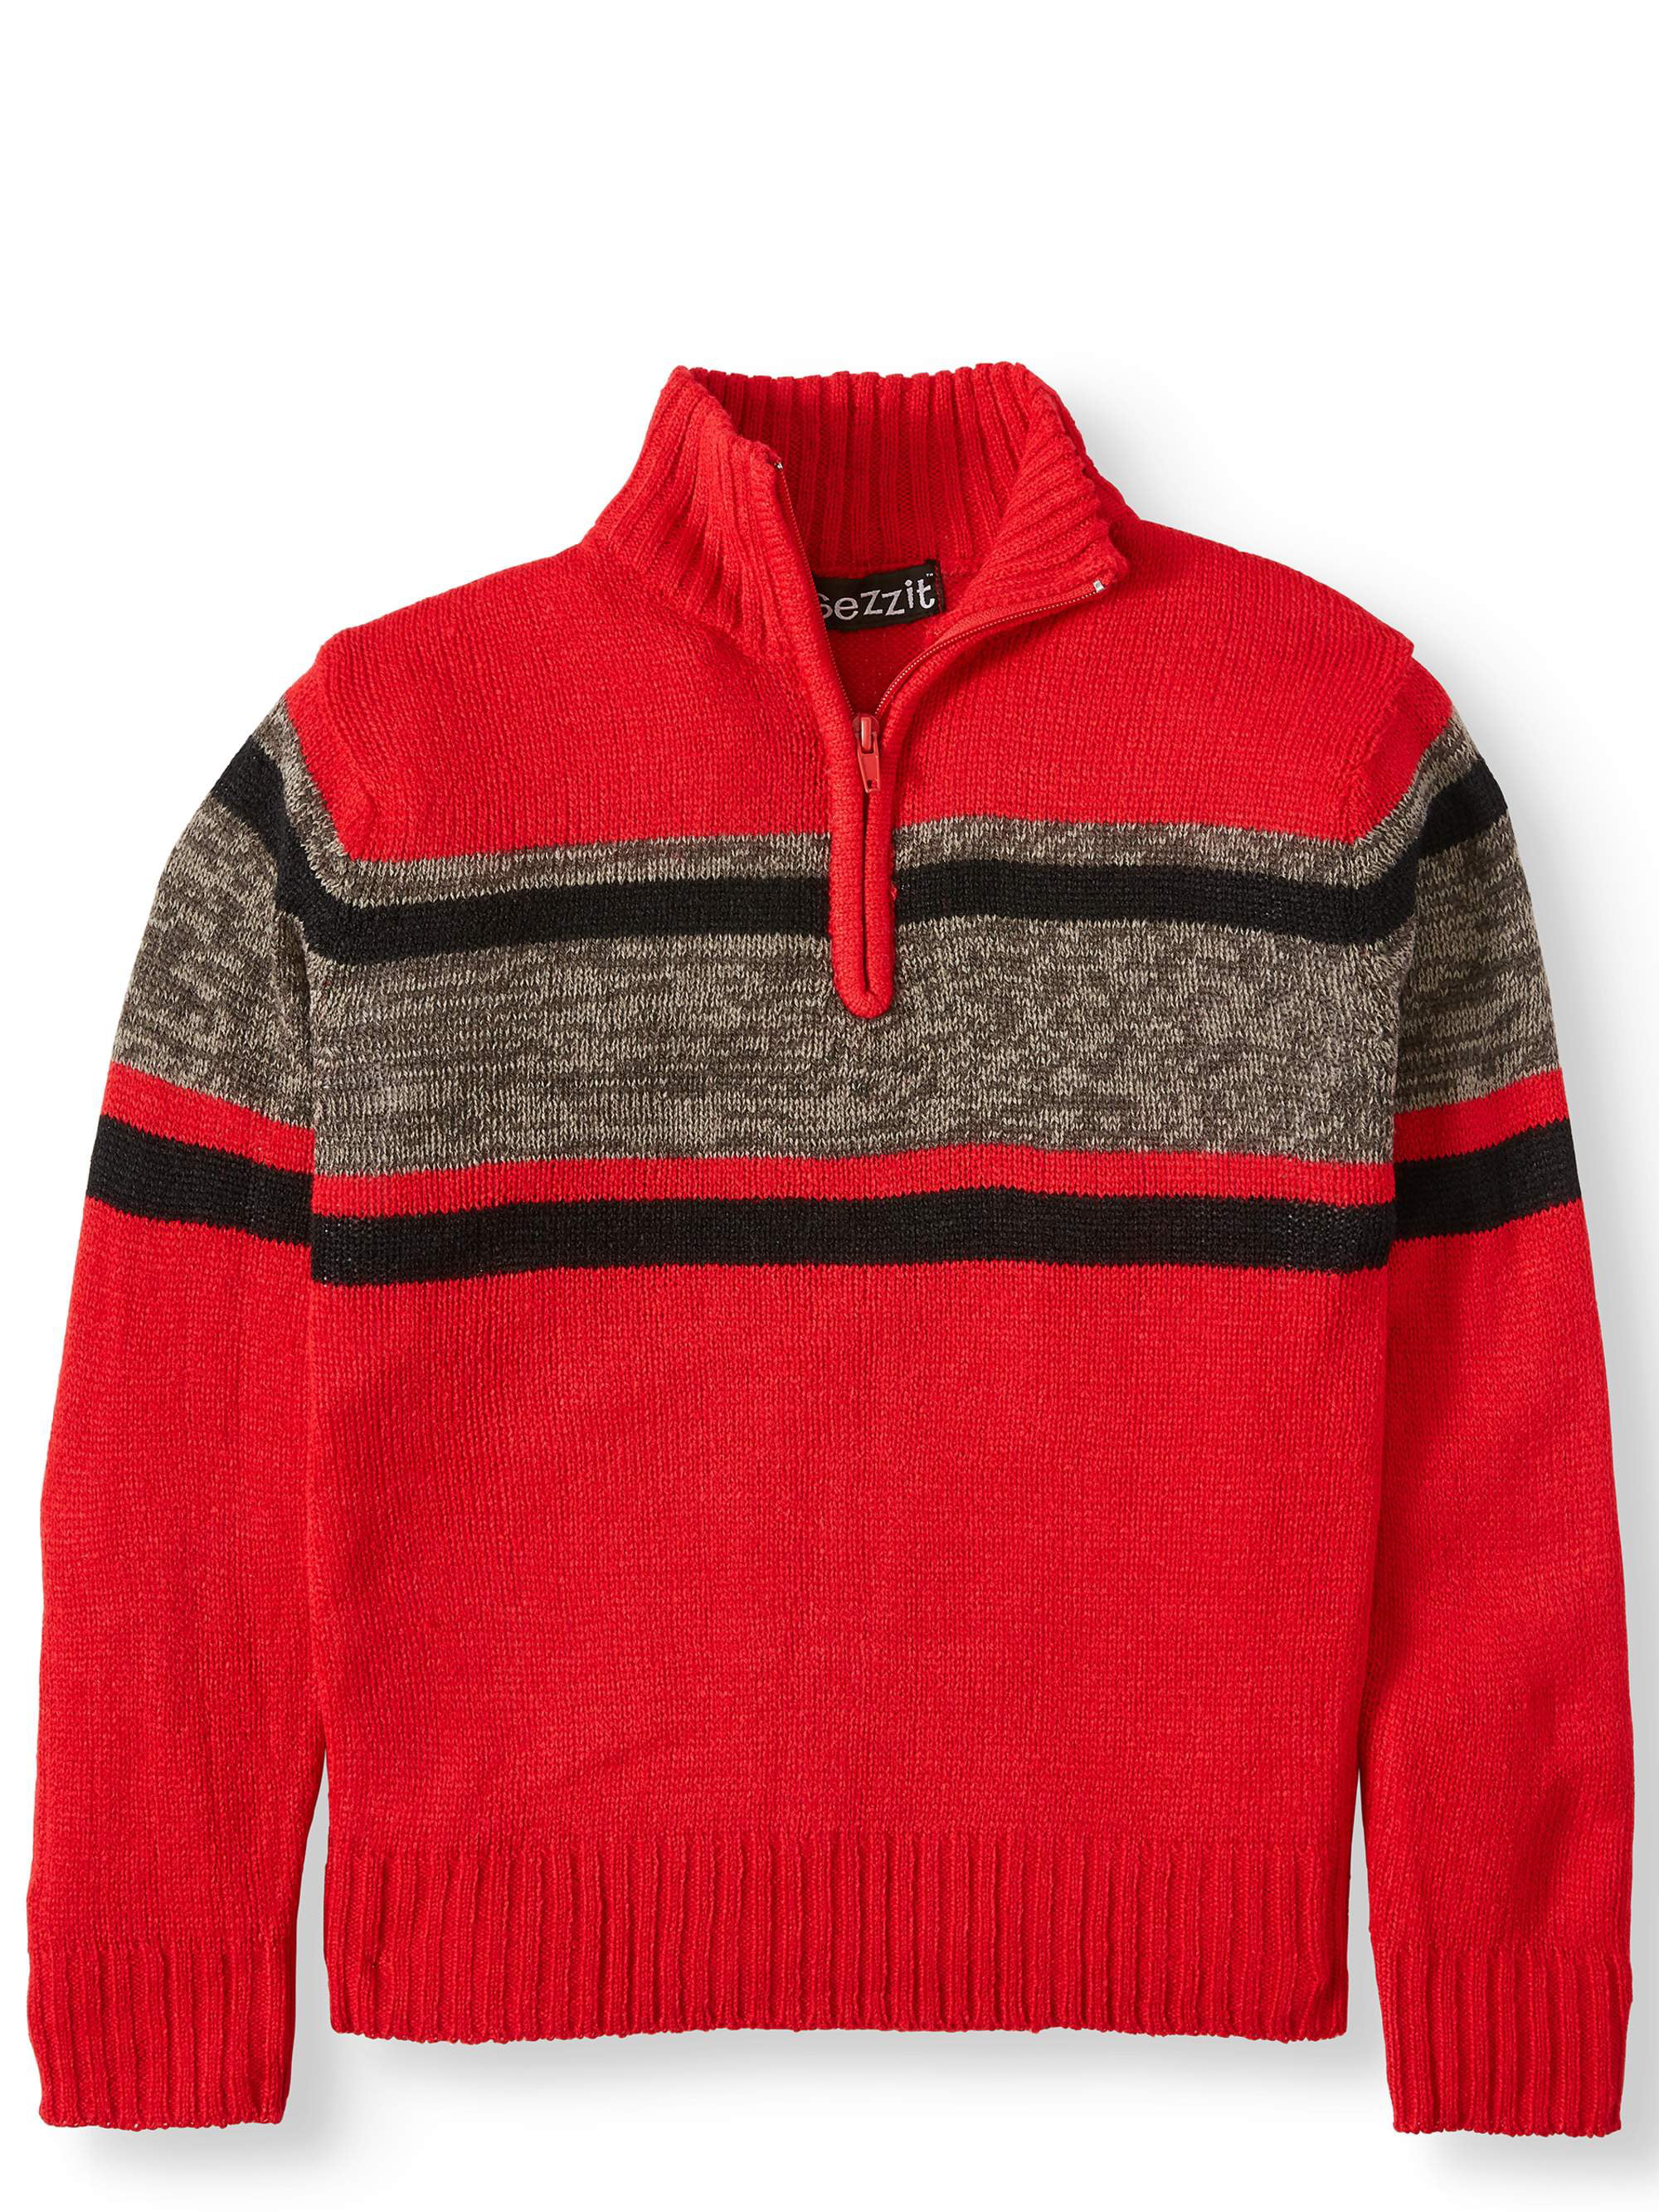 Sezzit Boys Wide Stripe Quarter Zip Long Sleeve Sweater Sizes 4-18 ...